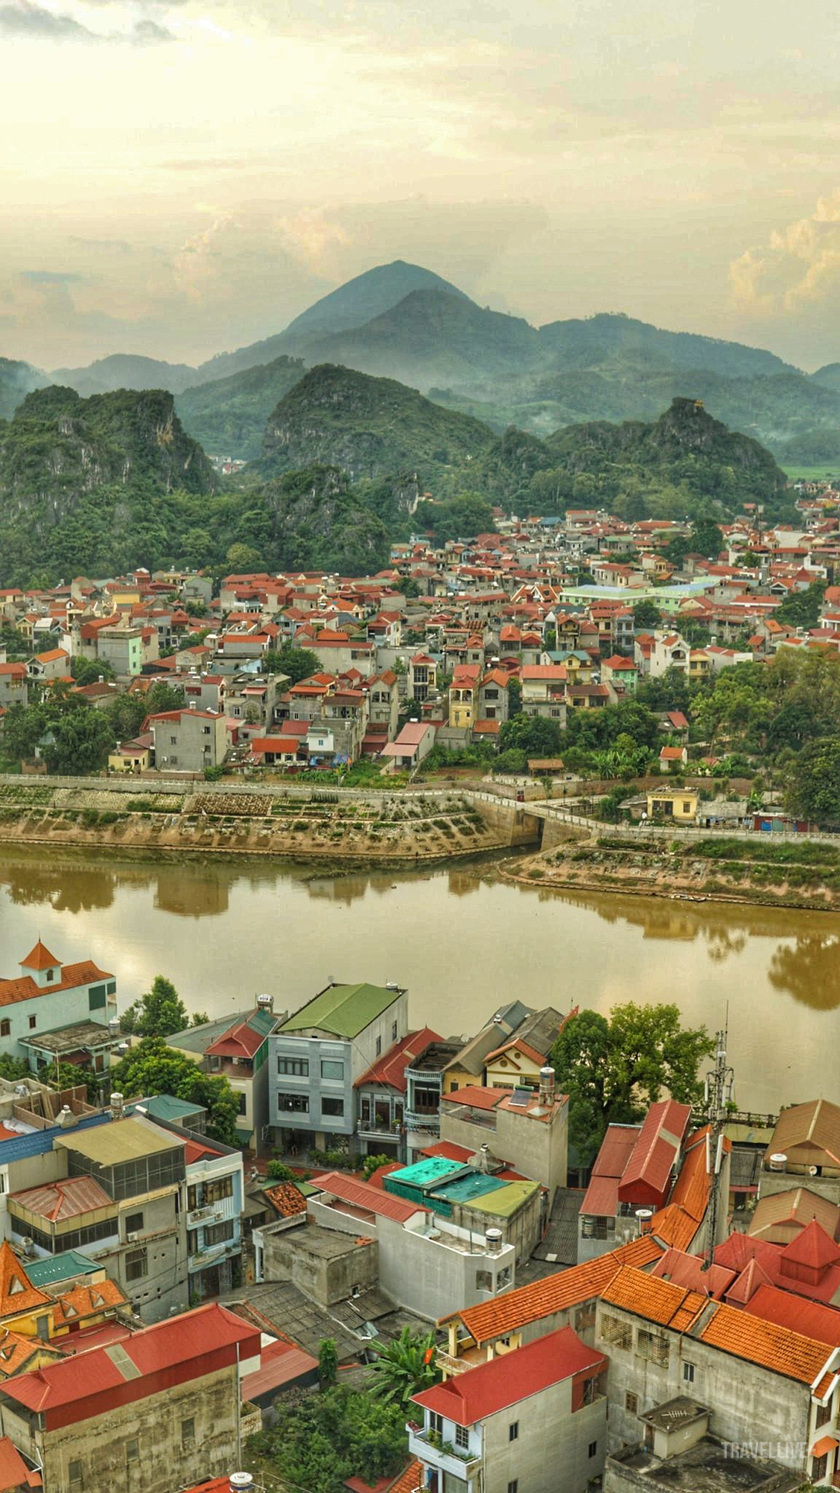 Tầm nhìn bao quát thành phố, ôm trọn cả sông núi hữu tình tại khách sạn Four Points by Sheraton Lạng Sơn